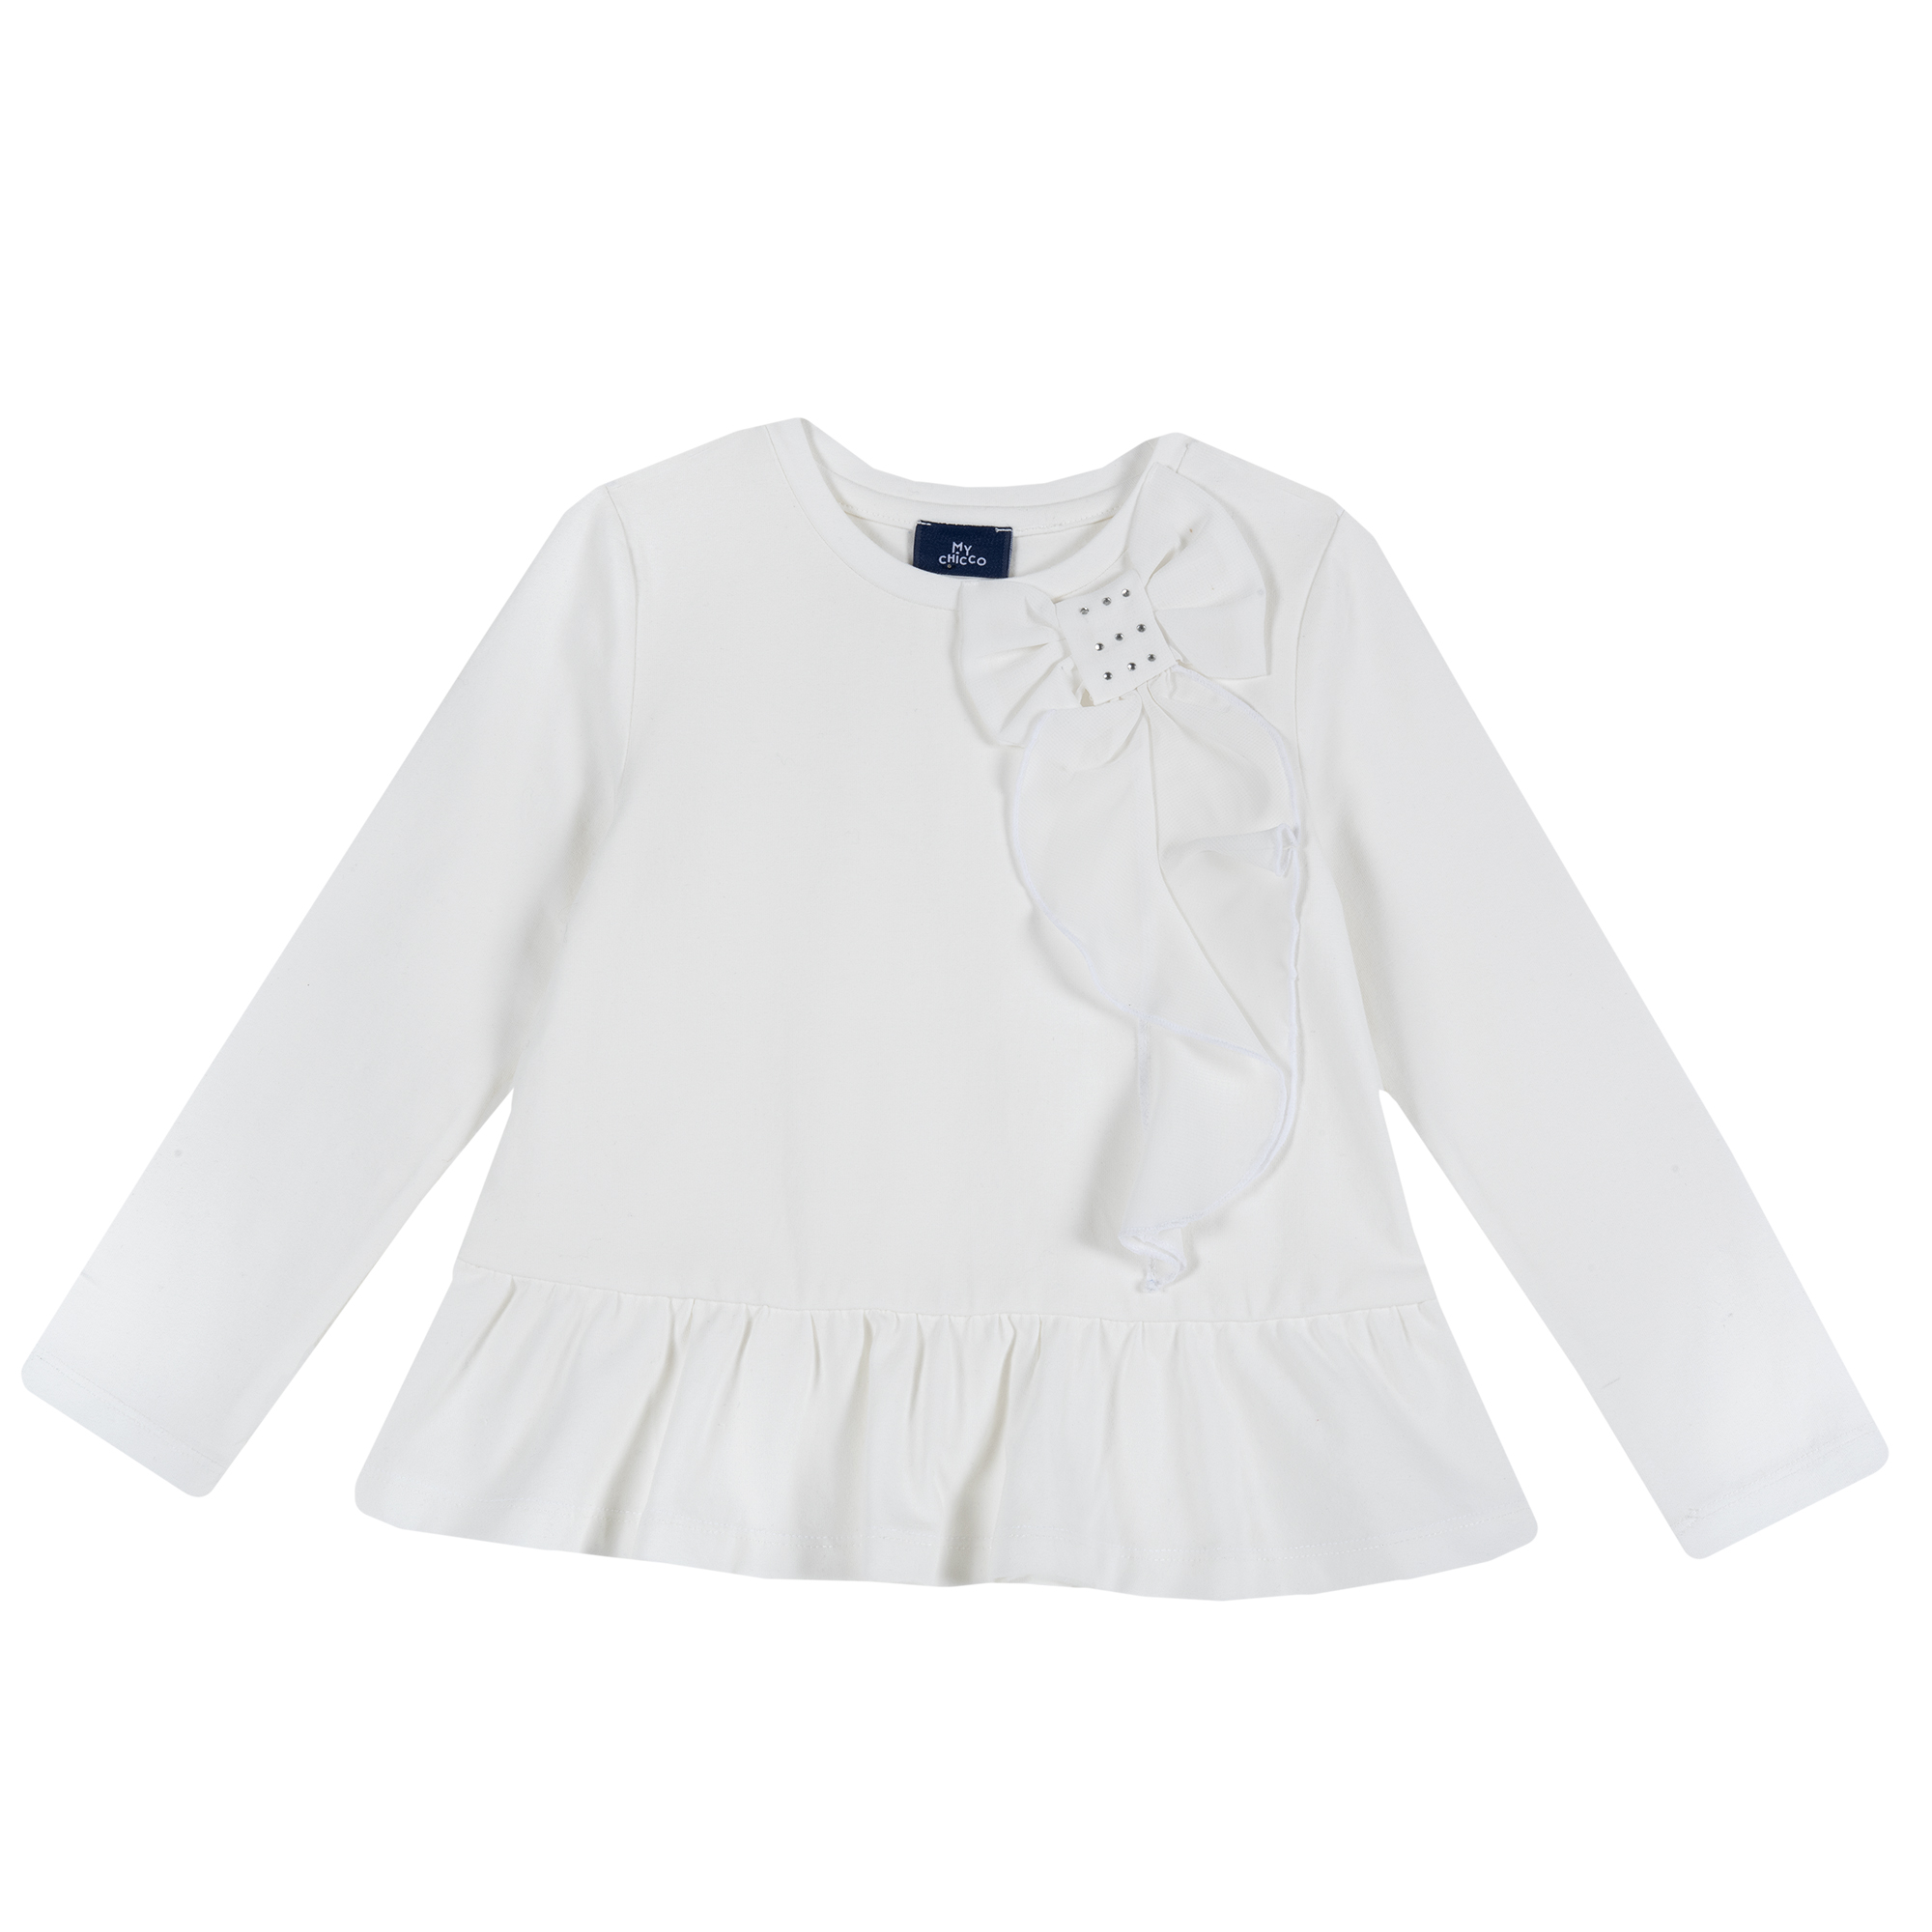 Bluza copii Chicco, aplicatii decorative, alb, 64840